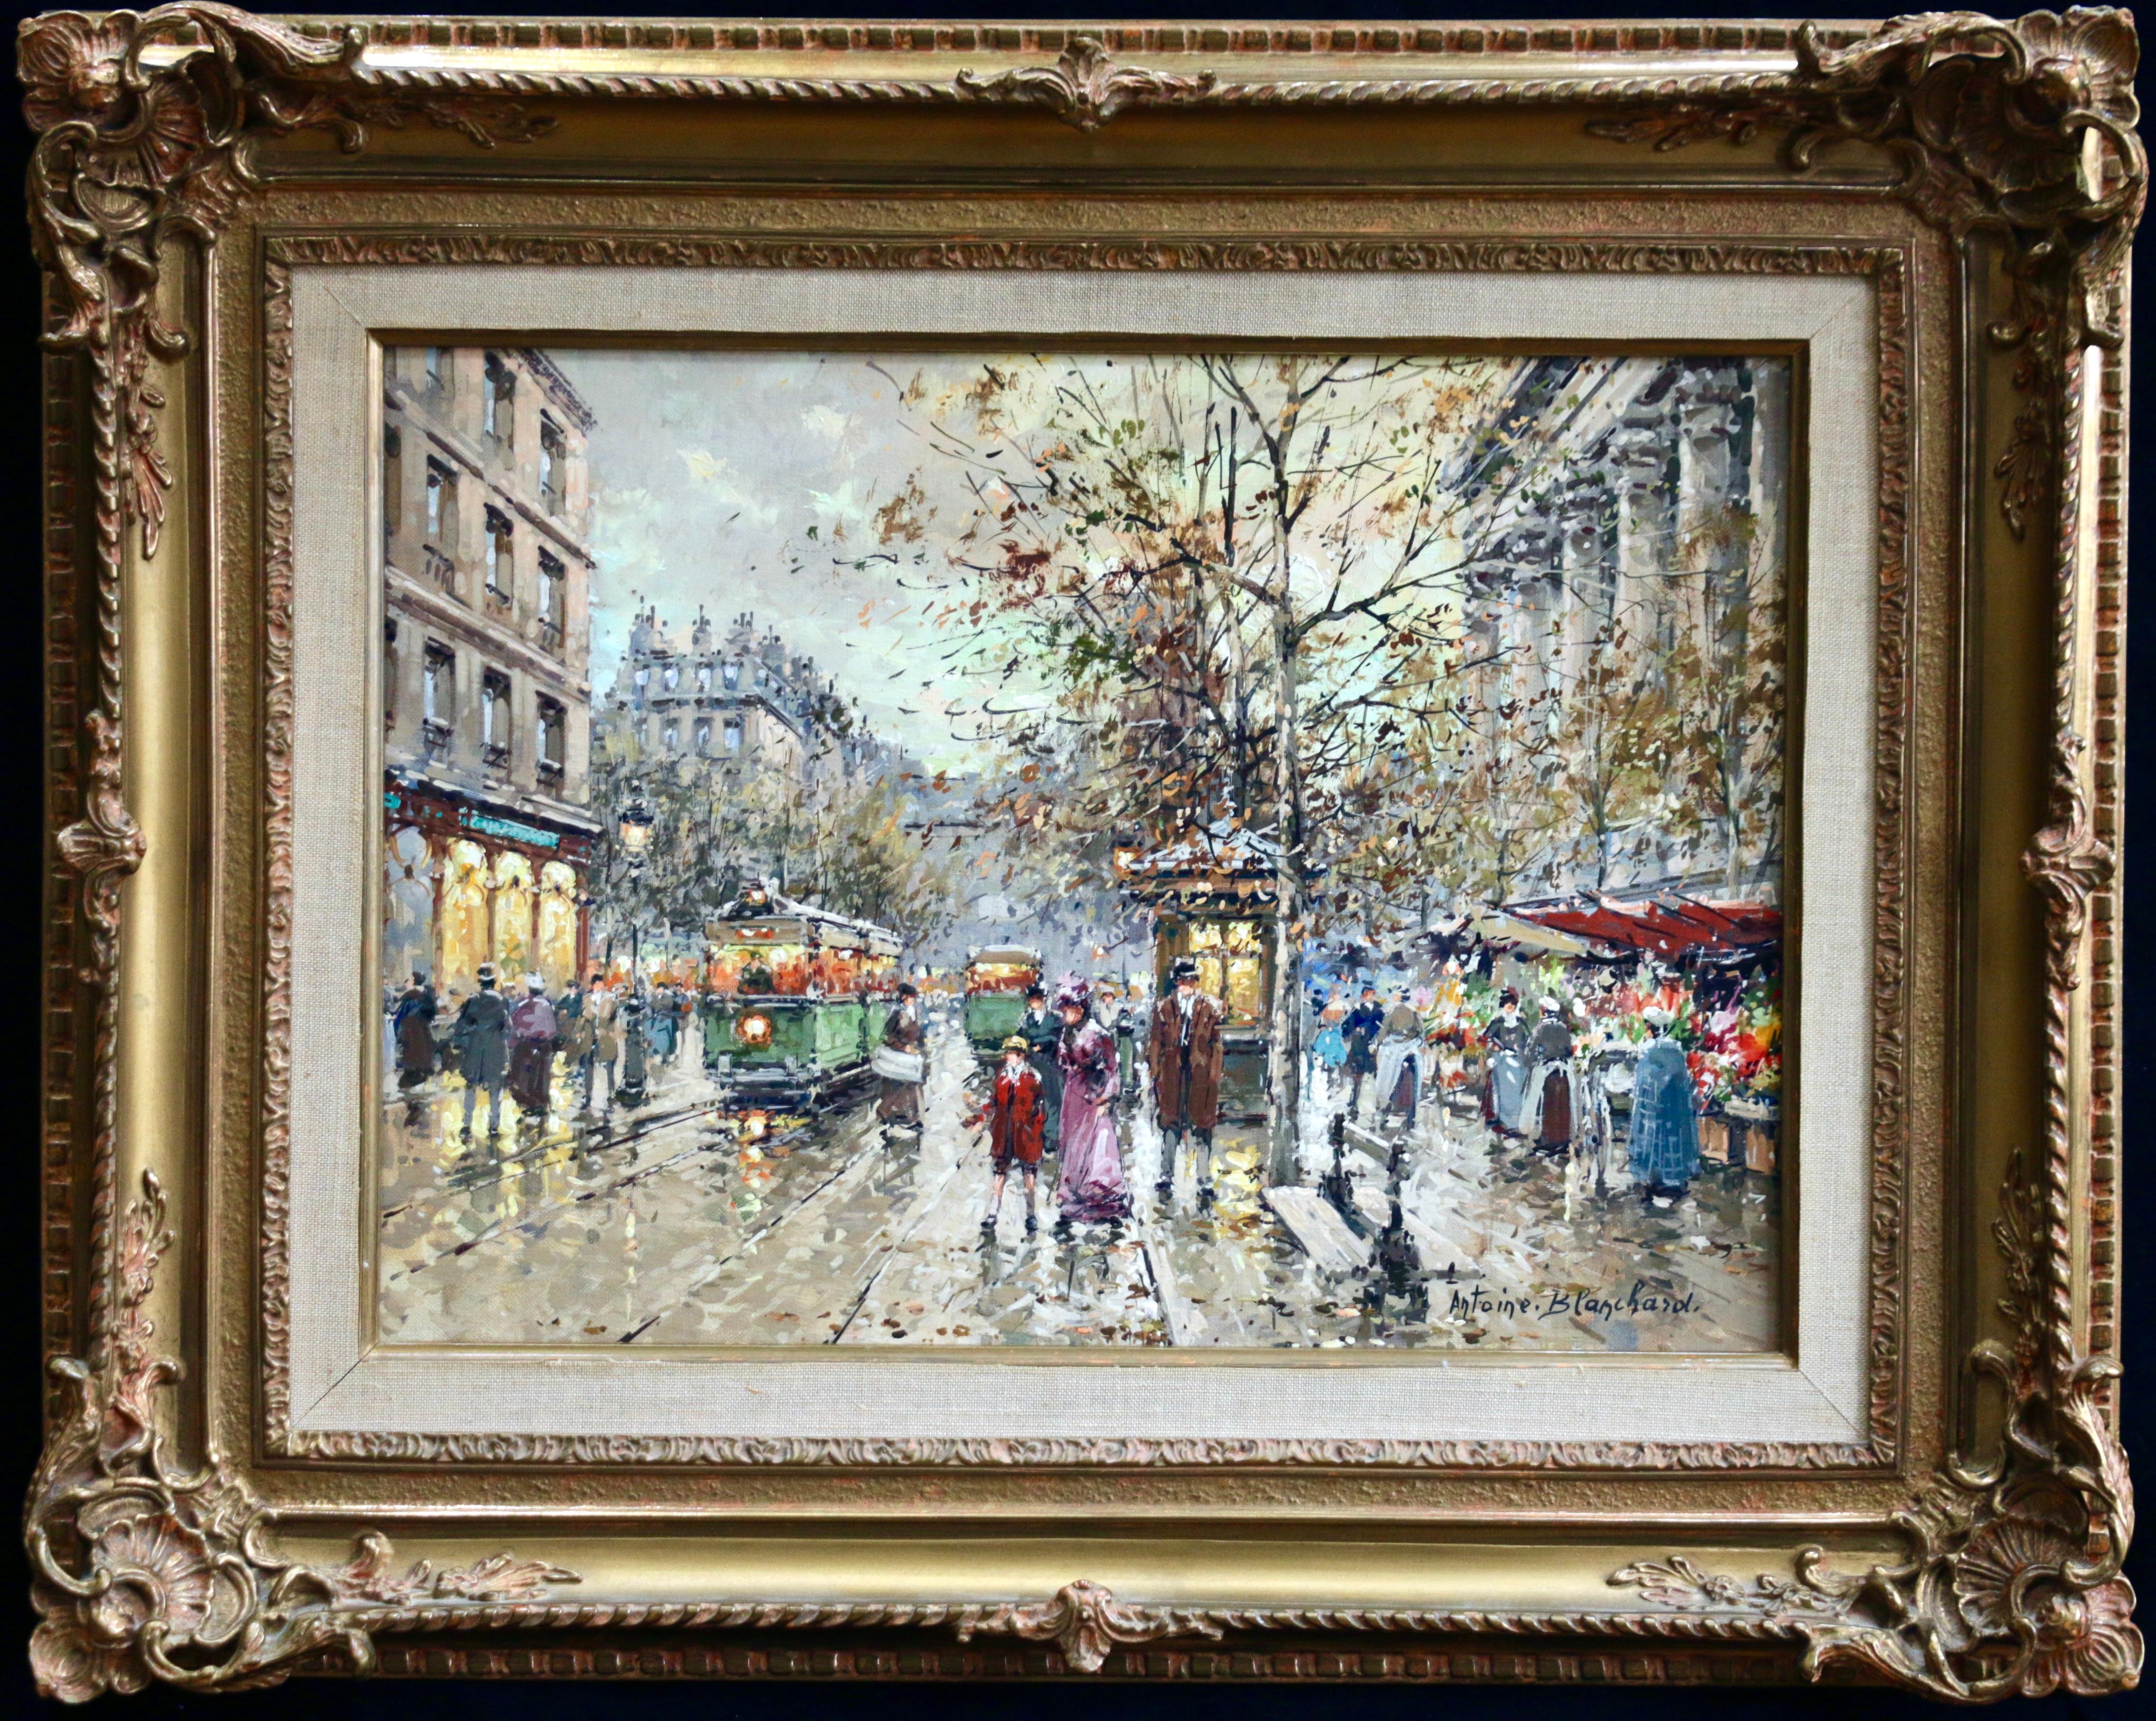 Marché aux Fleurs - de la Madeleine - 20th Century, City Landscape by Blanchard - Painting by Antoine Blanchard